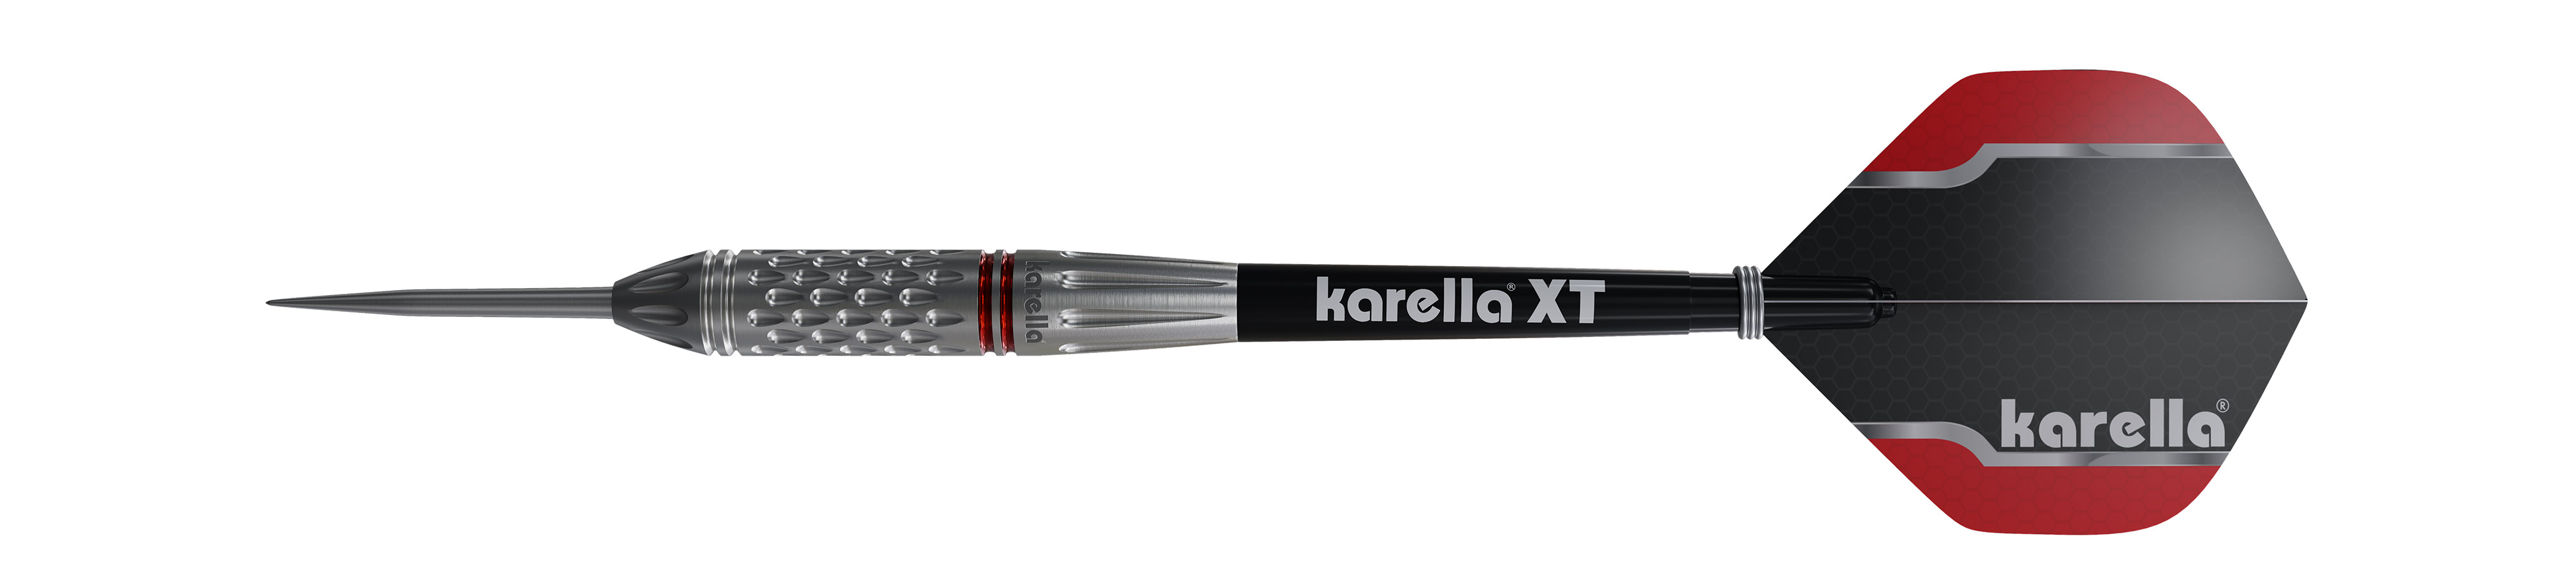 Steeldart Karella Commander, silver, 90% tungsten, 21g or 23g